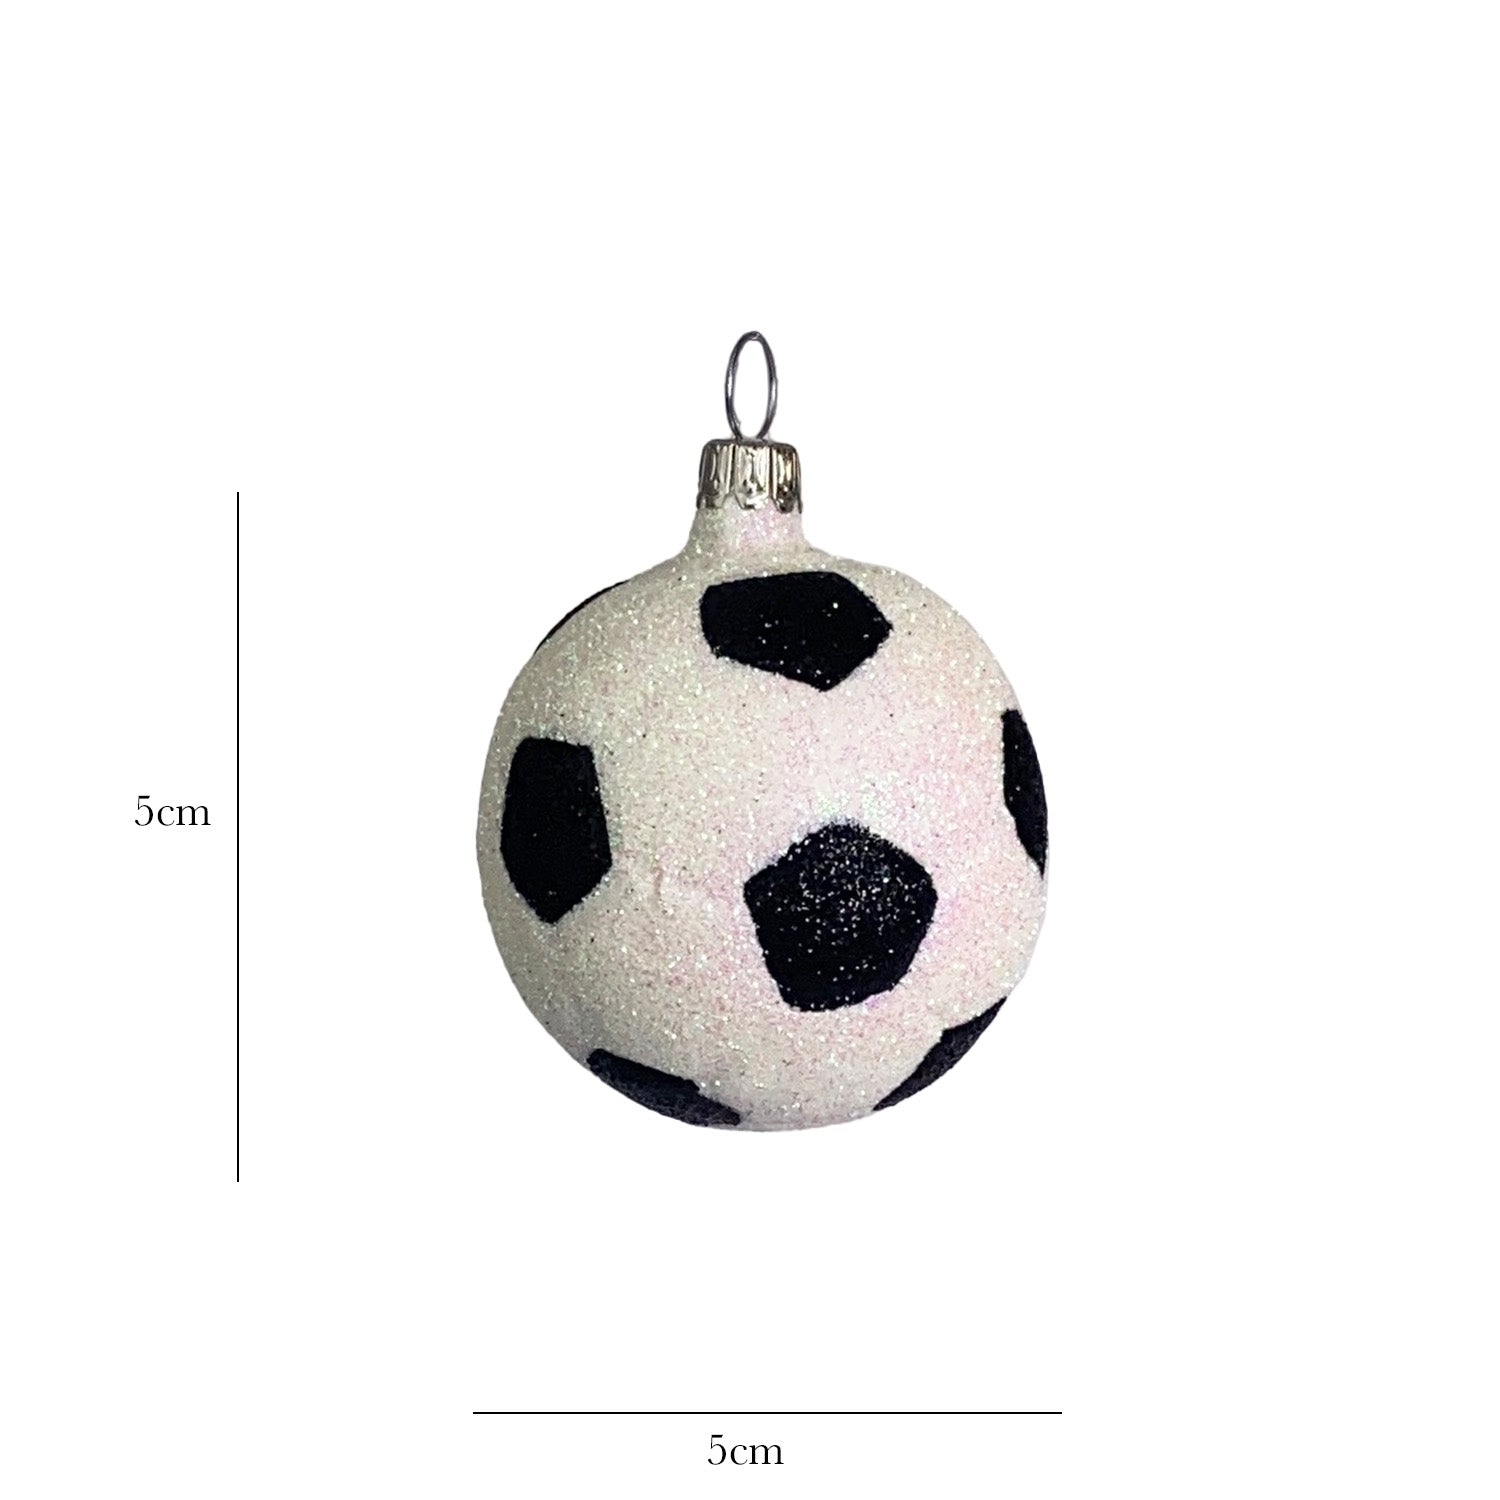 Fussball mit Glitter klein Christbaumkugel aus Glas